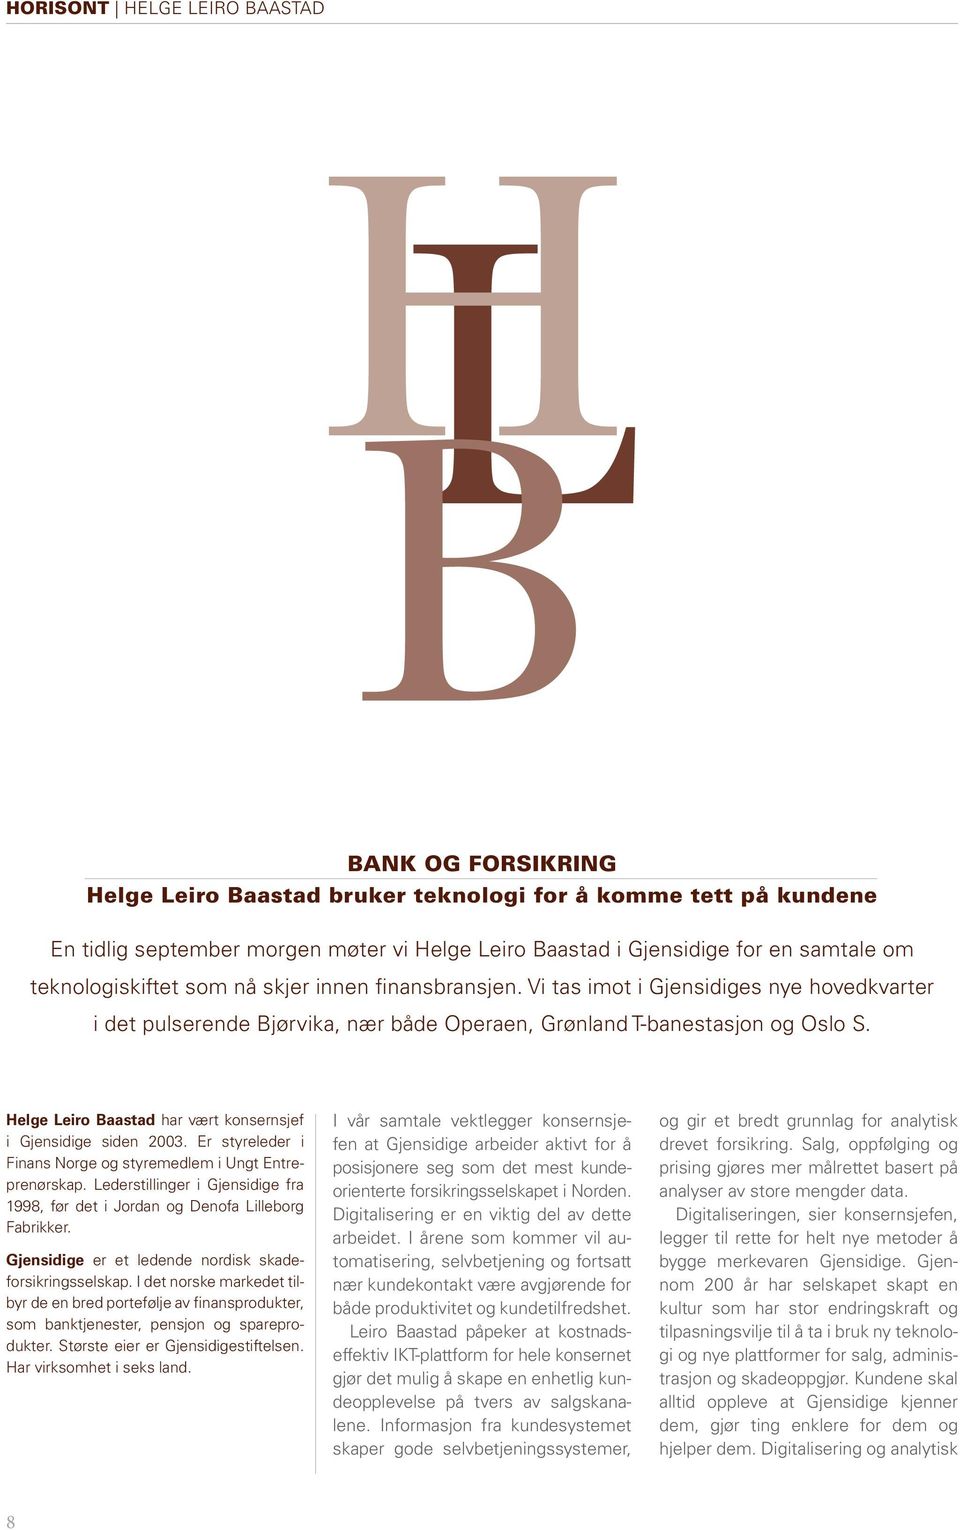 Helge Leiro Baastad har vært konsernsjef i Gjensidige siden 2003. Er styreleder i Finans Norge og styremedlem i Ungt Entreprenørskap.